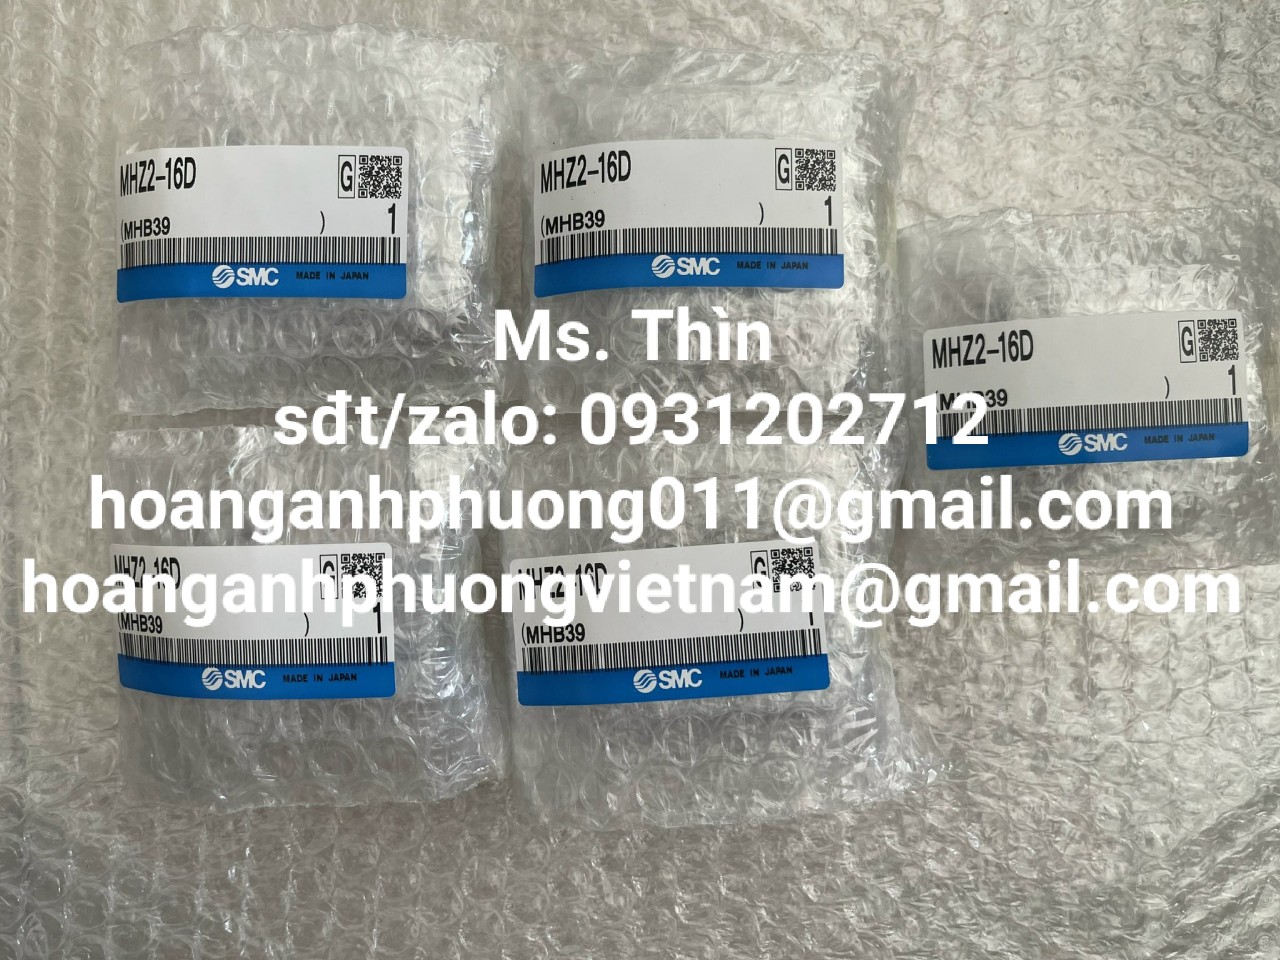 XY lanh  MHZ2-16D  SMC  Hoàng Anh Phương